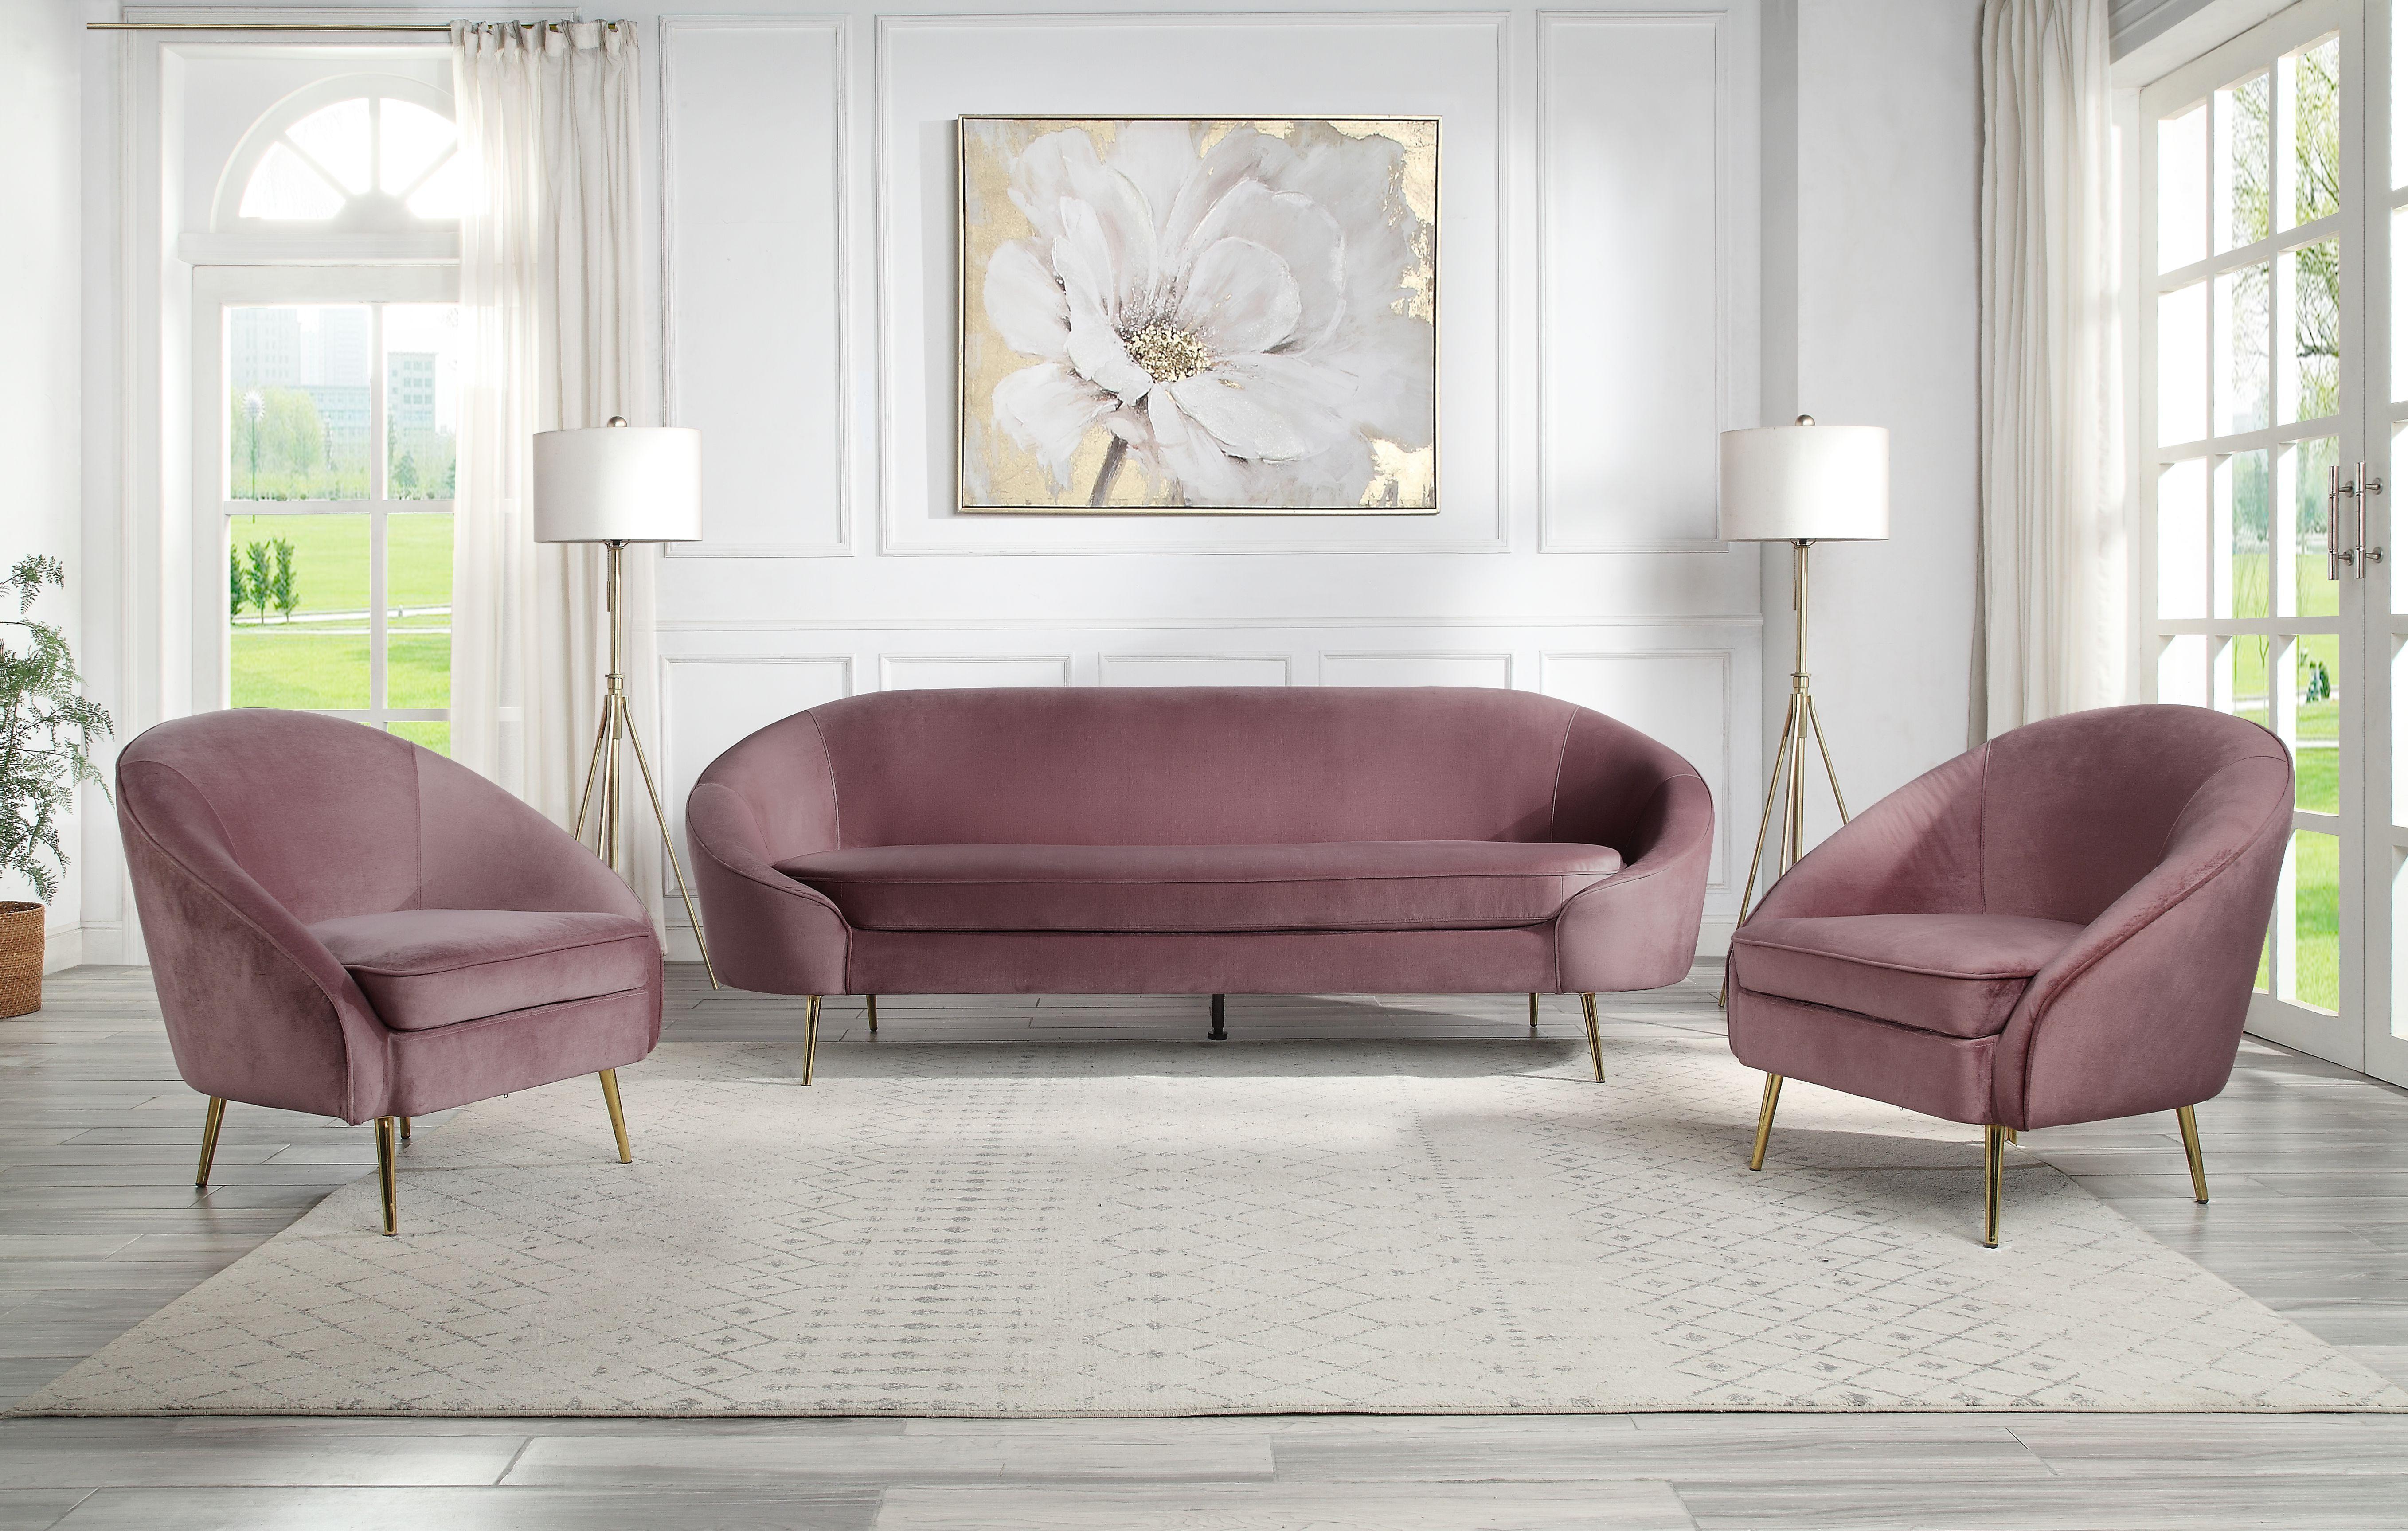 

    
LV00205 Acme Furniture Sofa
